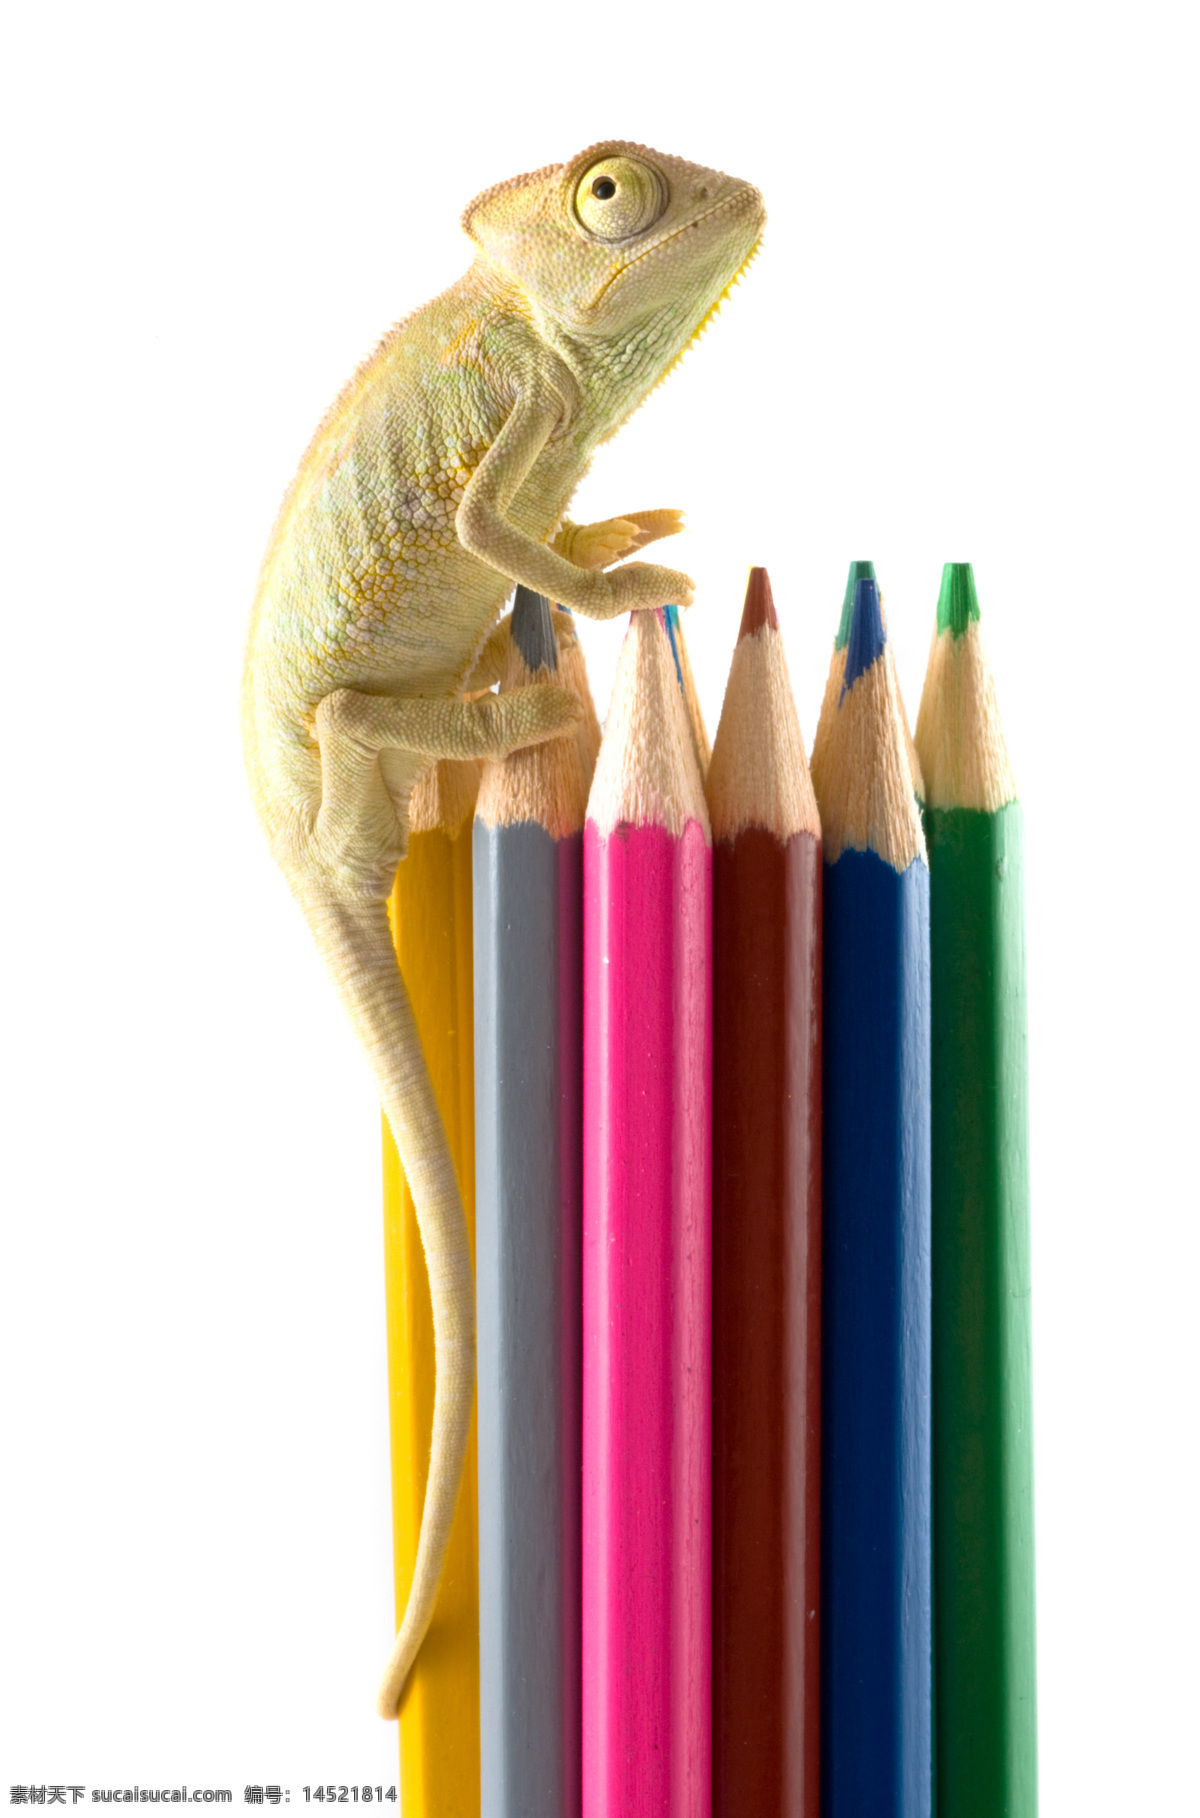 蜥蜴 彩色 铅笔 变色龙 彩色铅笔 画笔 动物世界 陆地动物 生物世界